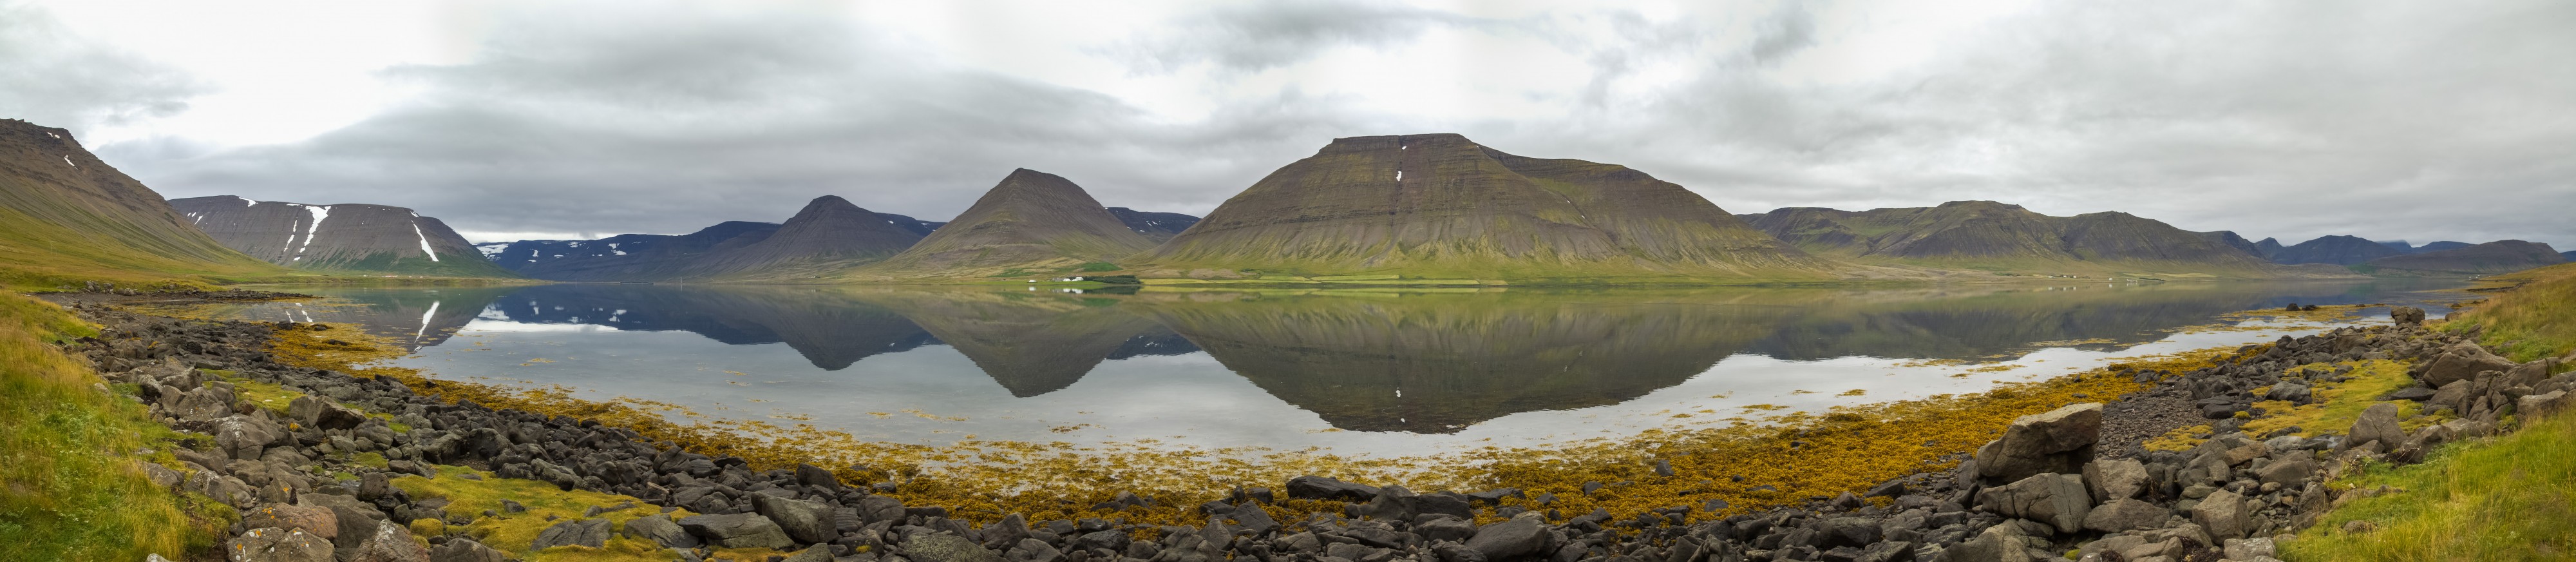 Dýrafjörður, Vestfirðir, Islandia, 2014-08-15, DD 037 PAN